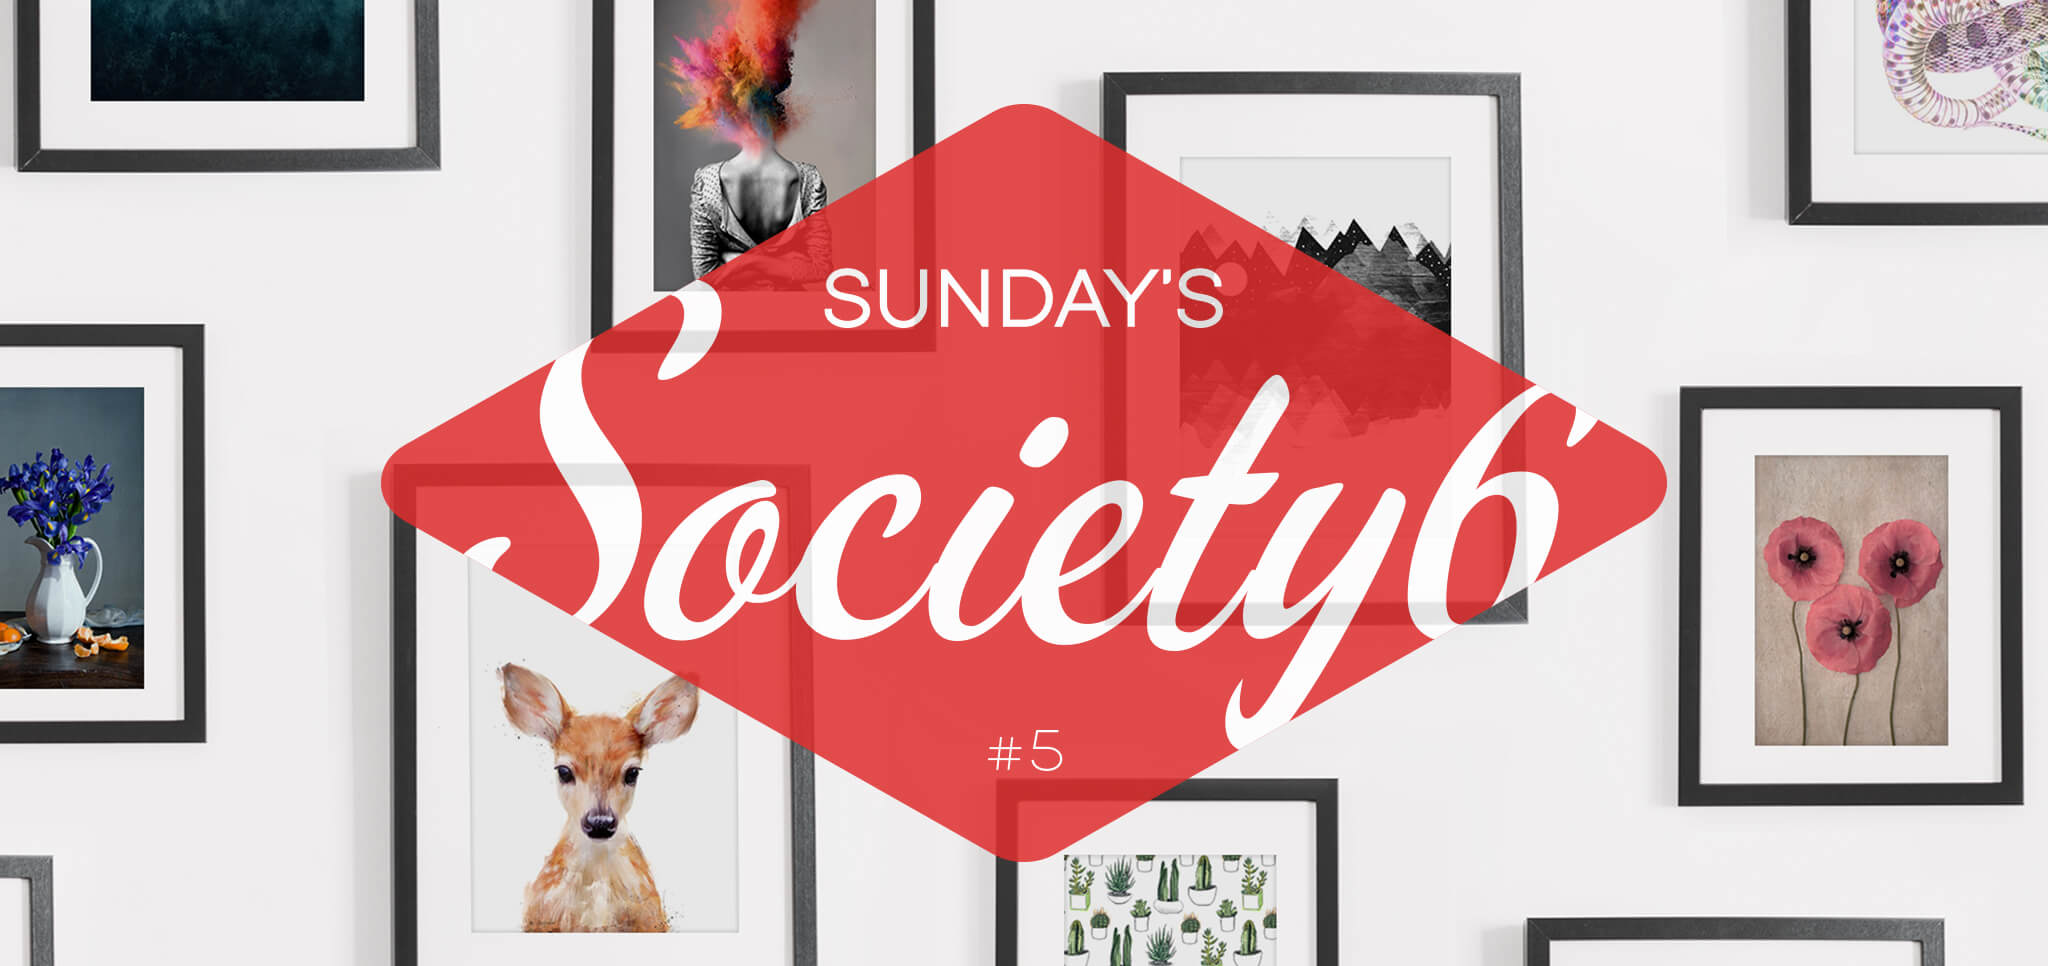 Sunday’s Society6 – #5